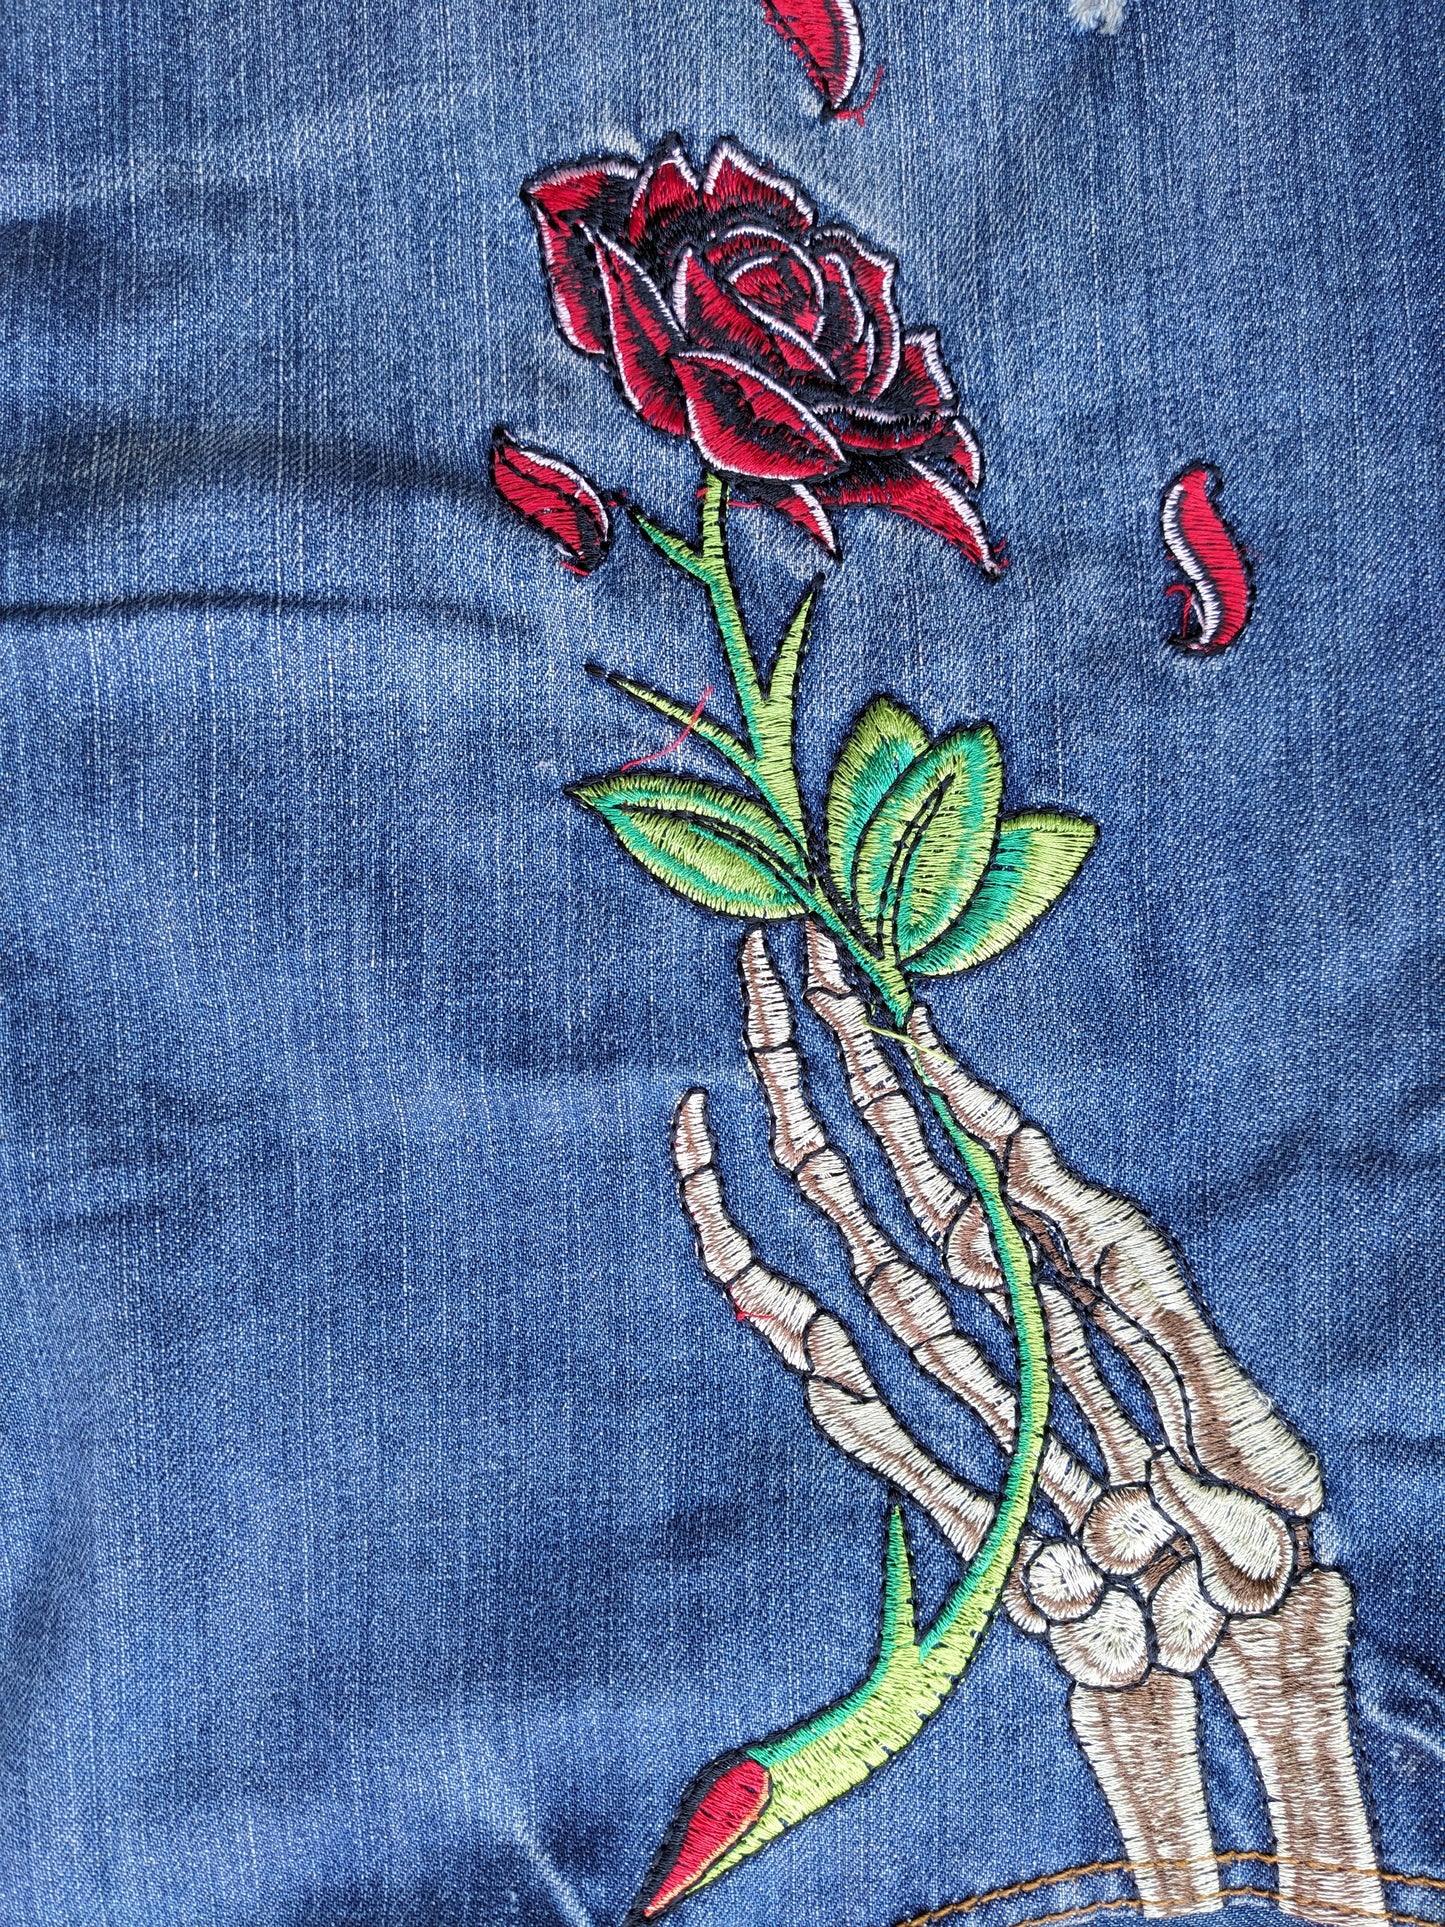 Christian Audigier Skull Embroidered Jeans